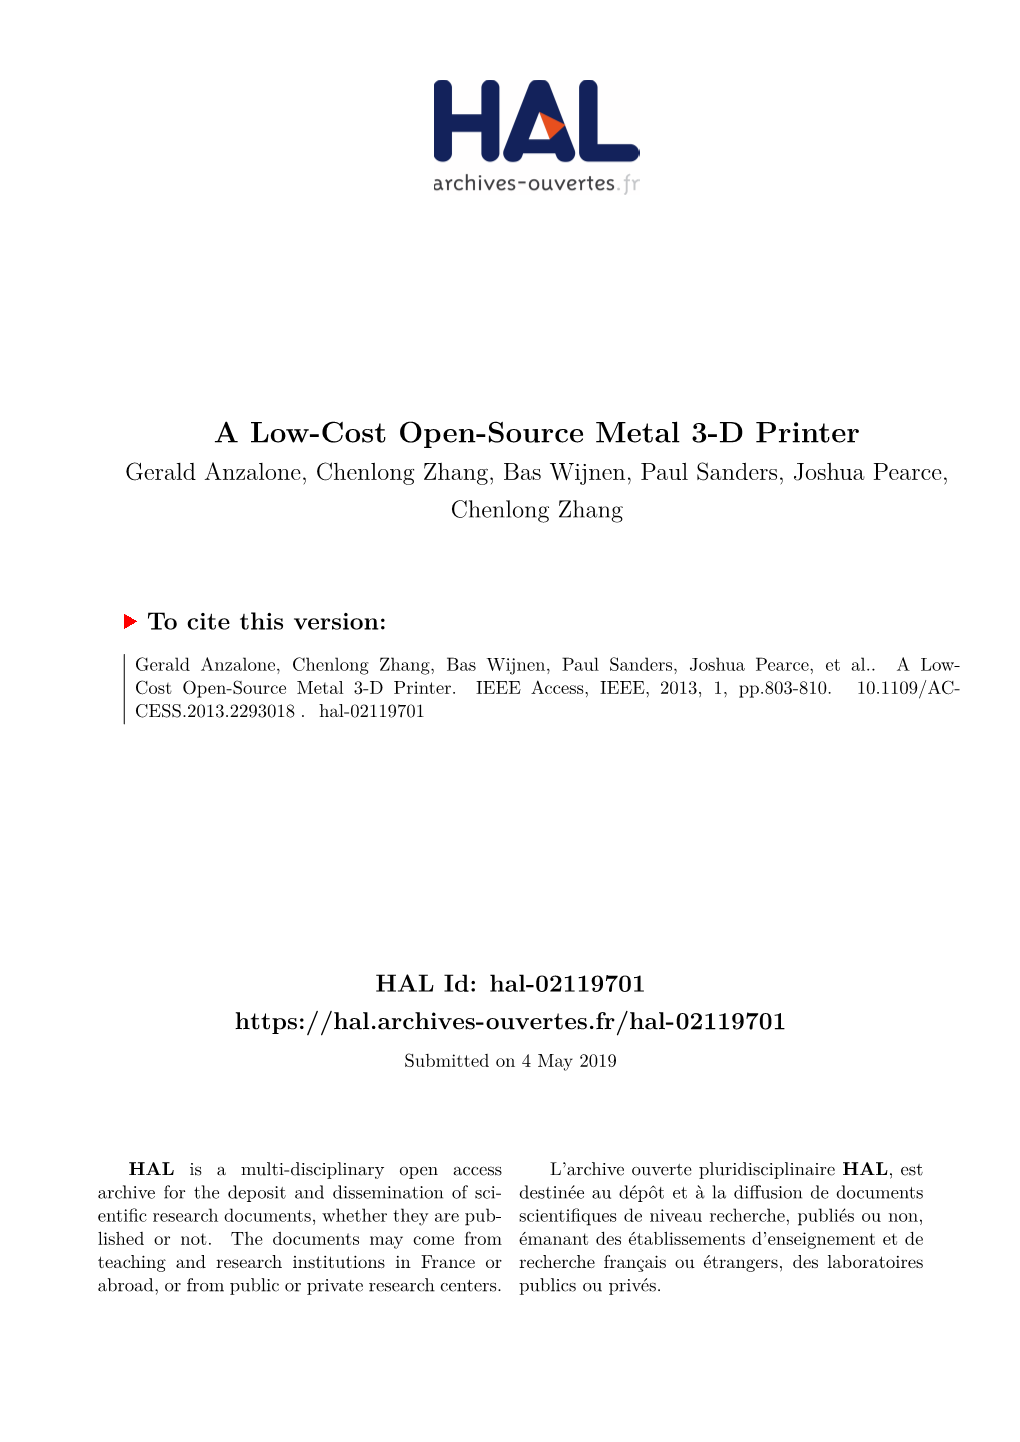 A Low-Cost Open-Source Metal 3-D Printer Gerald Anzalone, Chenlong Zhang, Bas Wijnen, Paul Sanders, Joshua Pearce, Chenlong Zhang